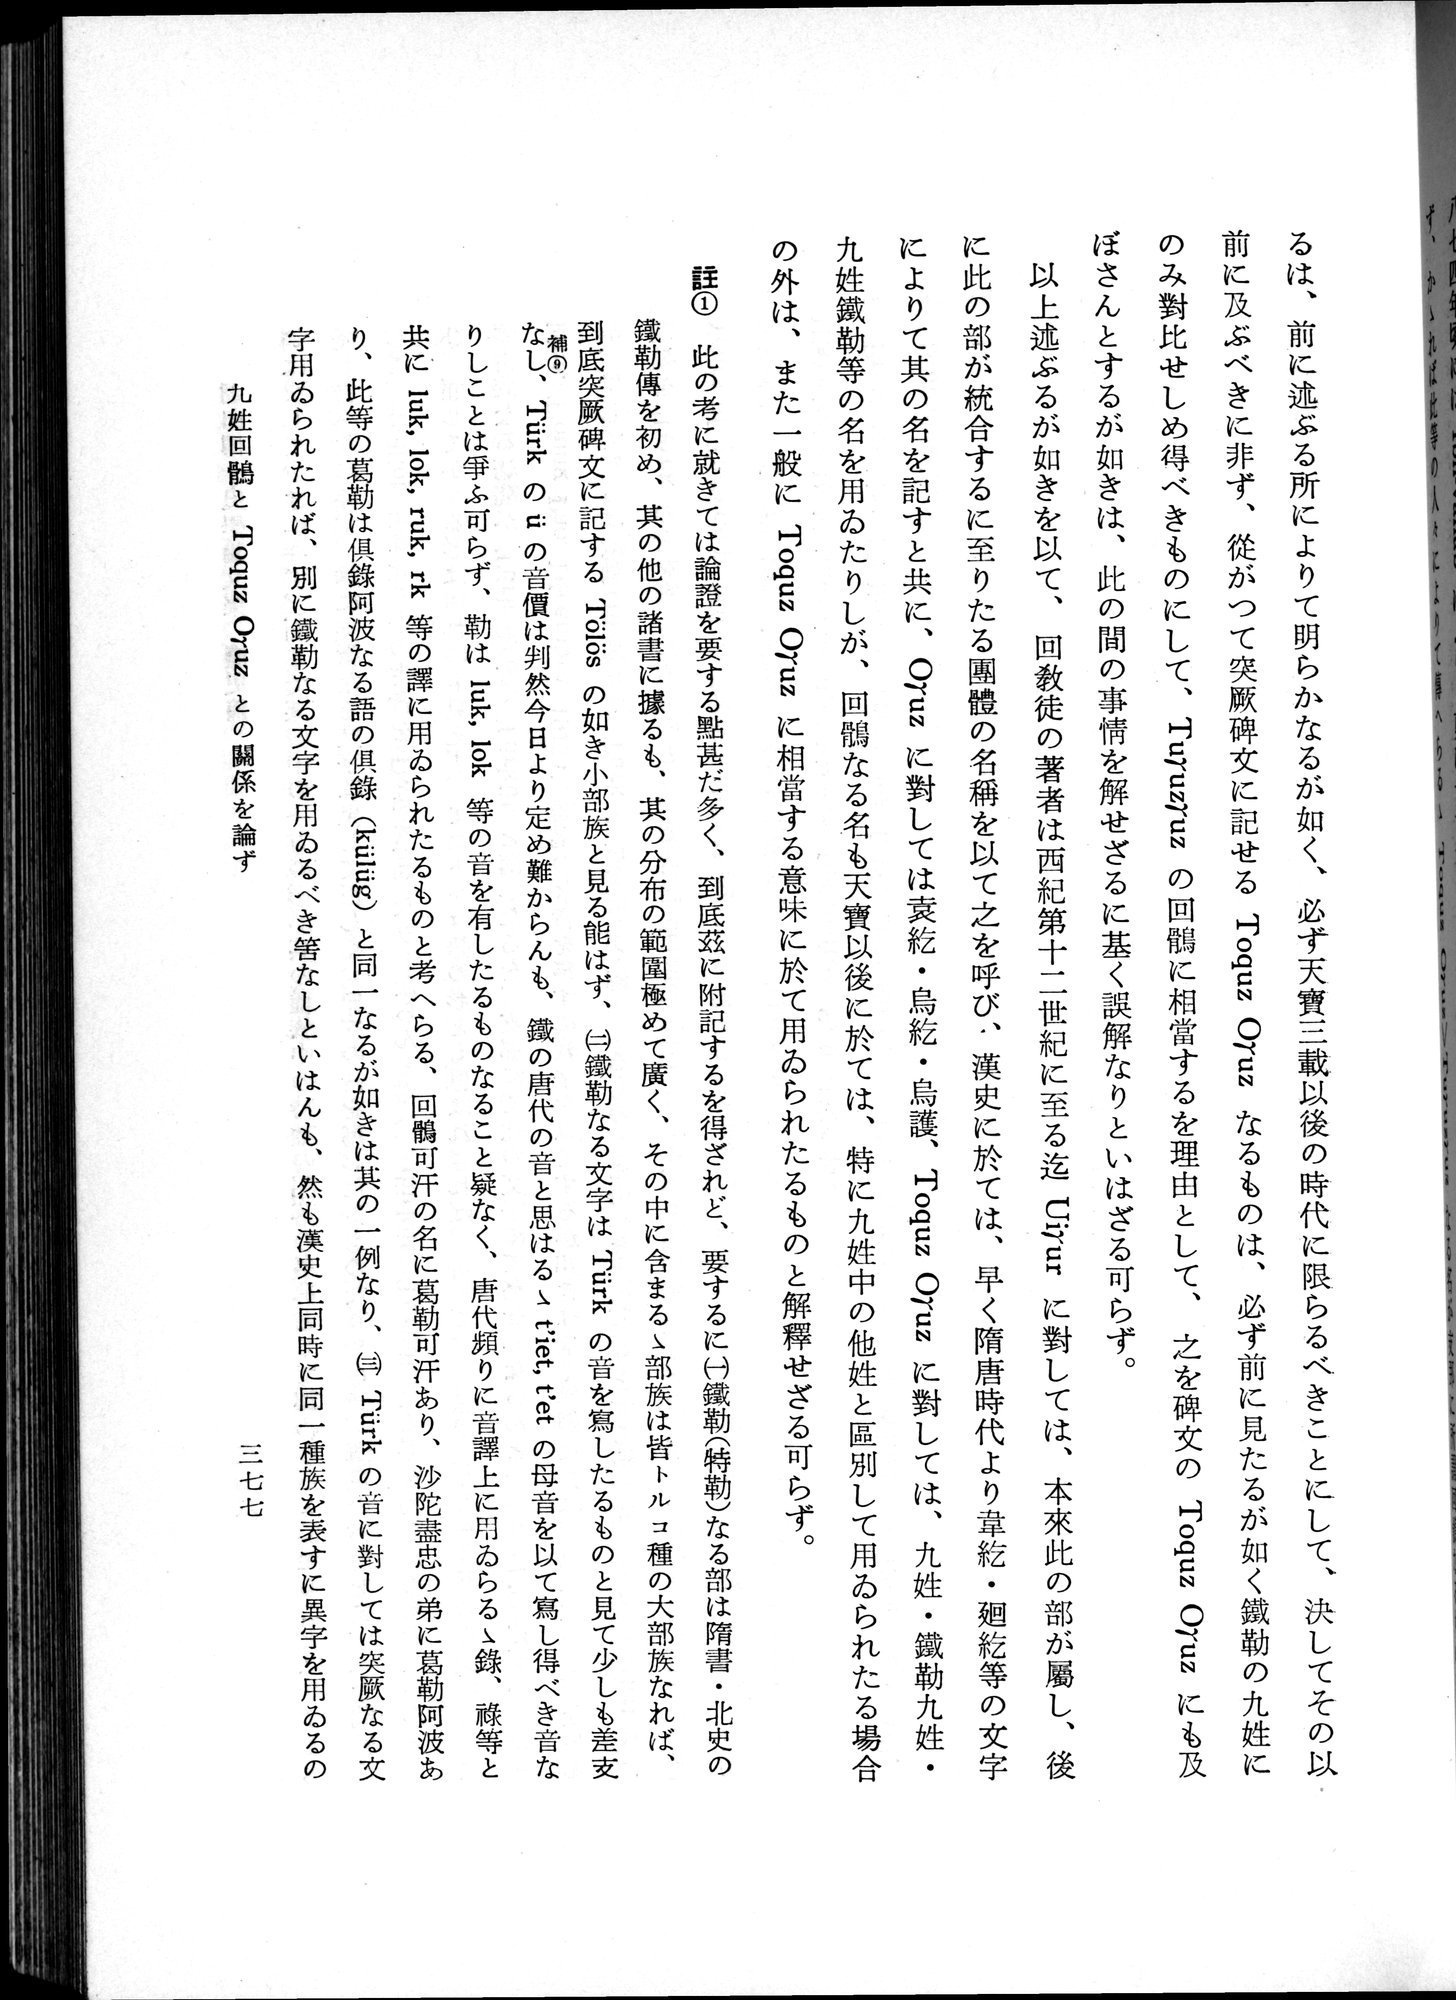 羽田博士史学論文集 : vol.1 / Page 415 (Grayscale High Resolution Image)